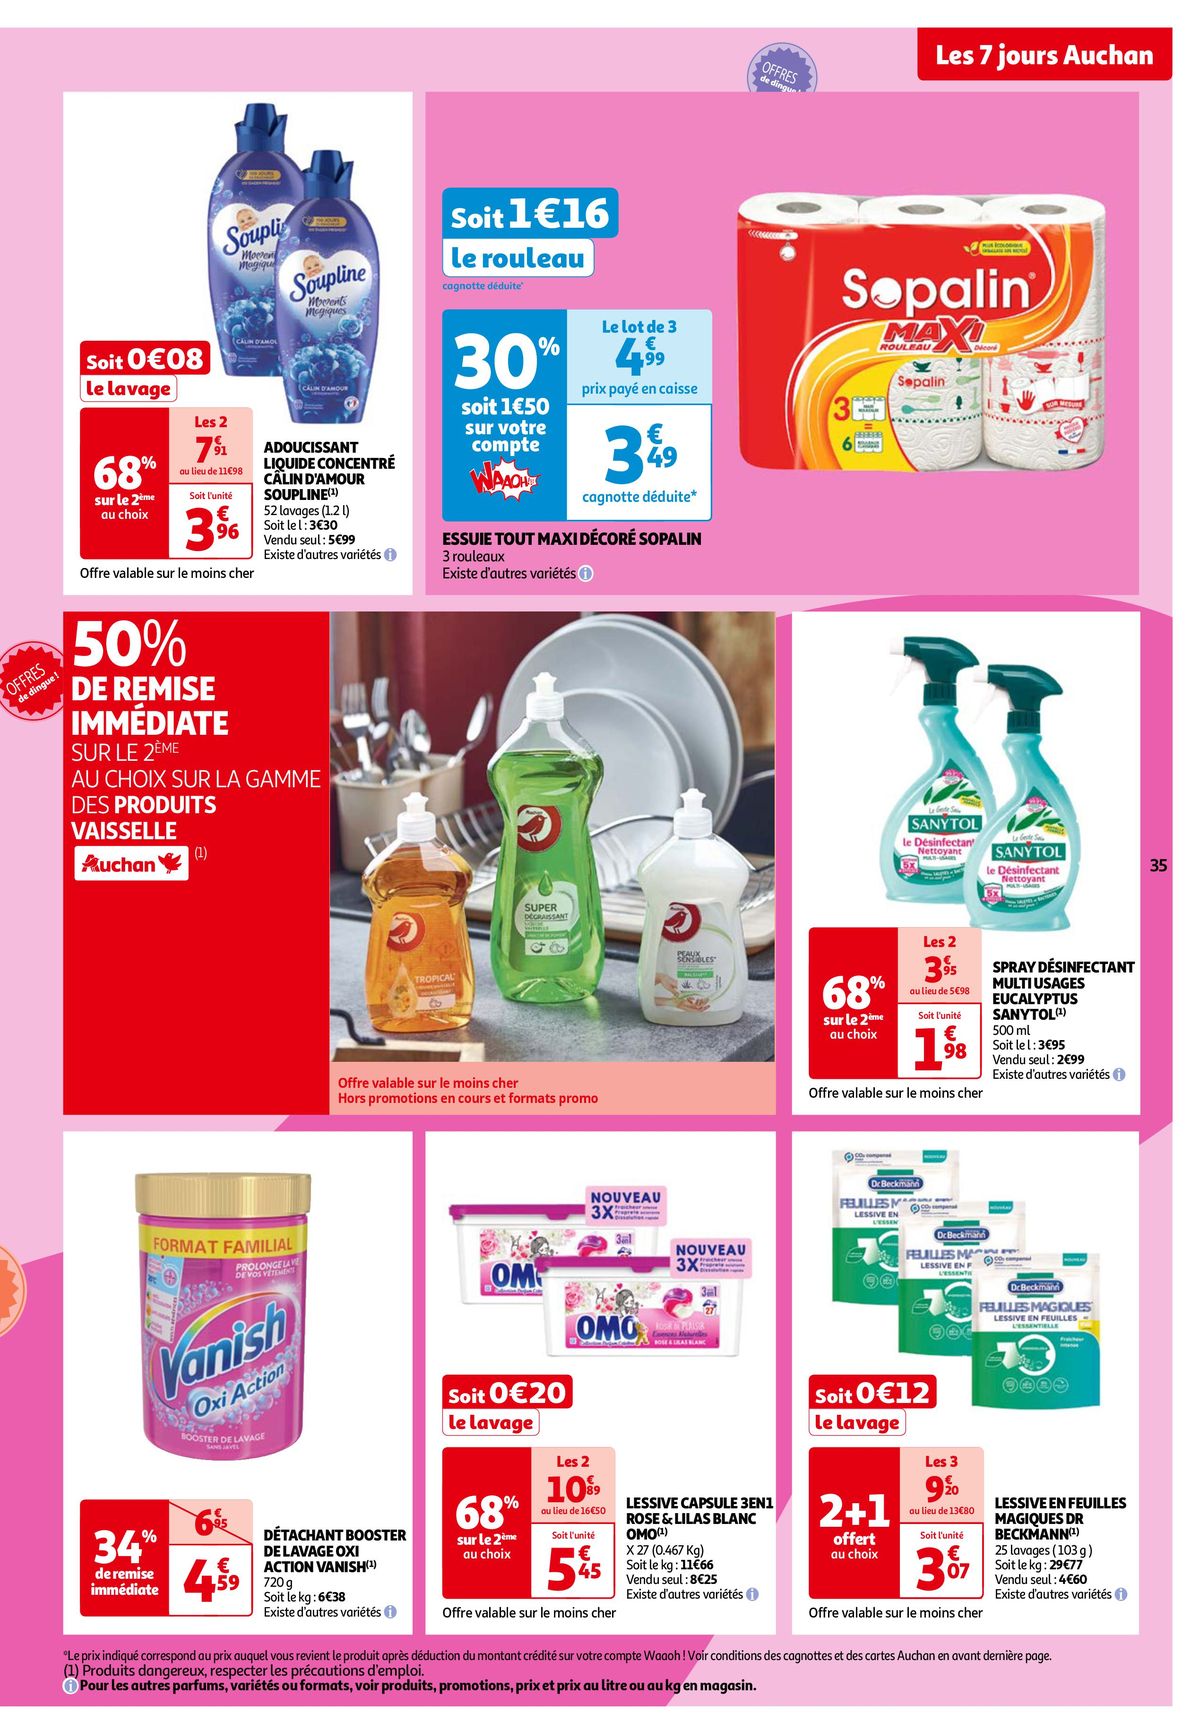 Catalogue Les 7 jours Auchan, c'est maintenant !, page 00035